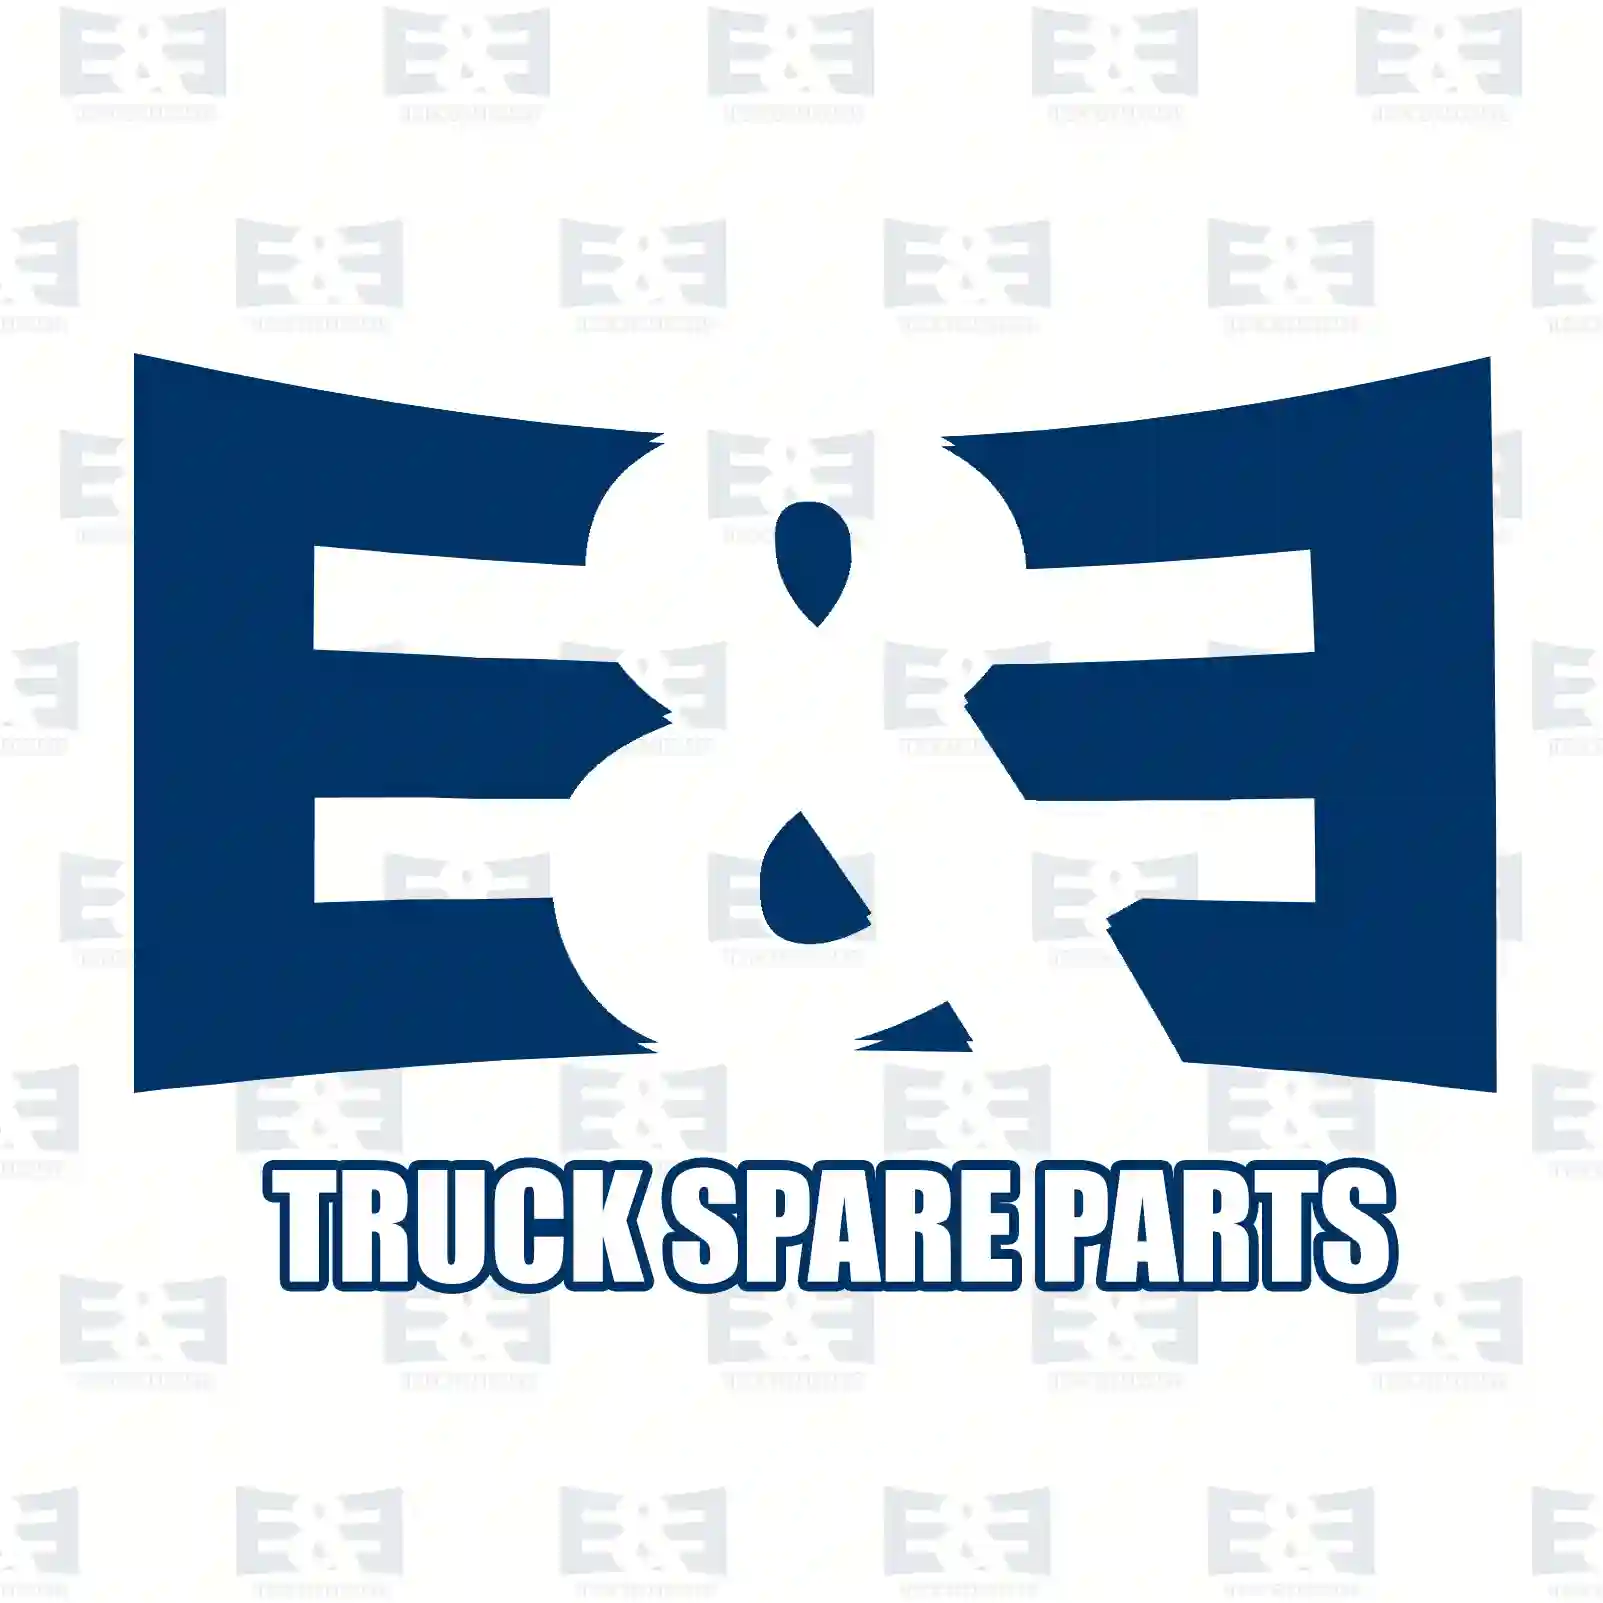 Screw, 2E2296726, 51900200131, 4039900010, ZG01962-0008 ||  2E2296726 E&E Truck Spare Parts | Truck Spare Parts, Auotomotive Spare Parts Screw, 2E2296726, 51900200131, 4039900010, ZG01962-0008 ||  2E2296726 E&E Truck Spare Parts | Truck Spare Parts, Auotomotive Spare Parts